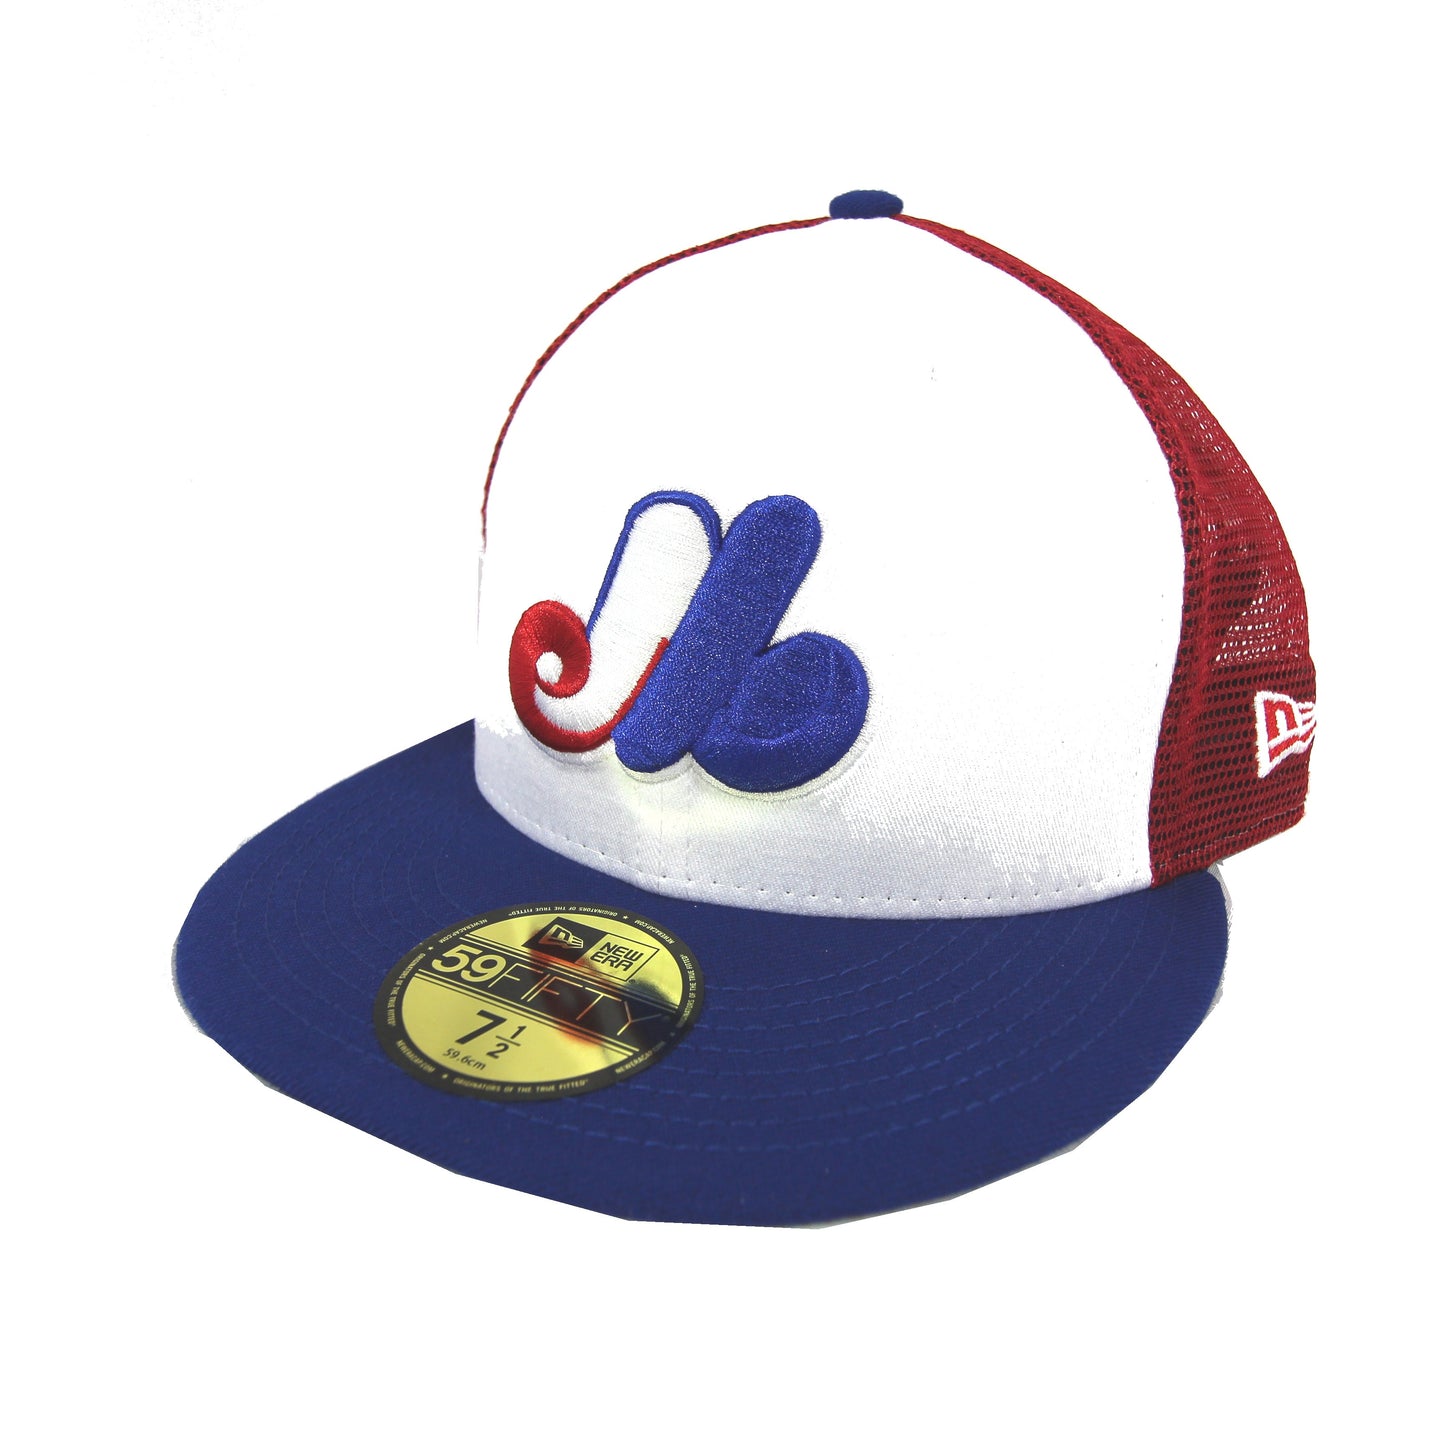 MLB Caps / Casquettes MLB - Call / Appelez